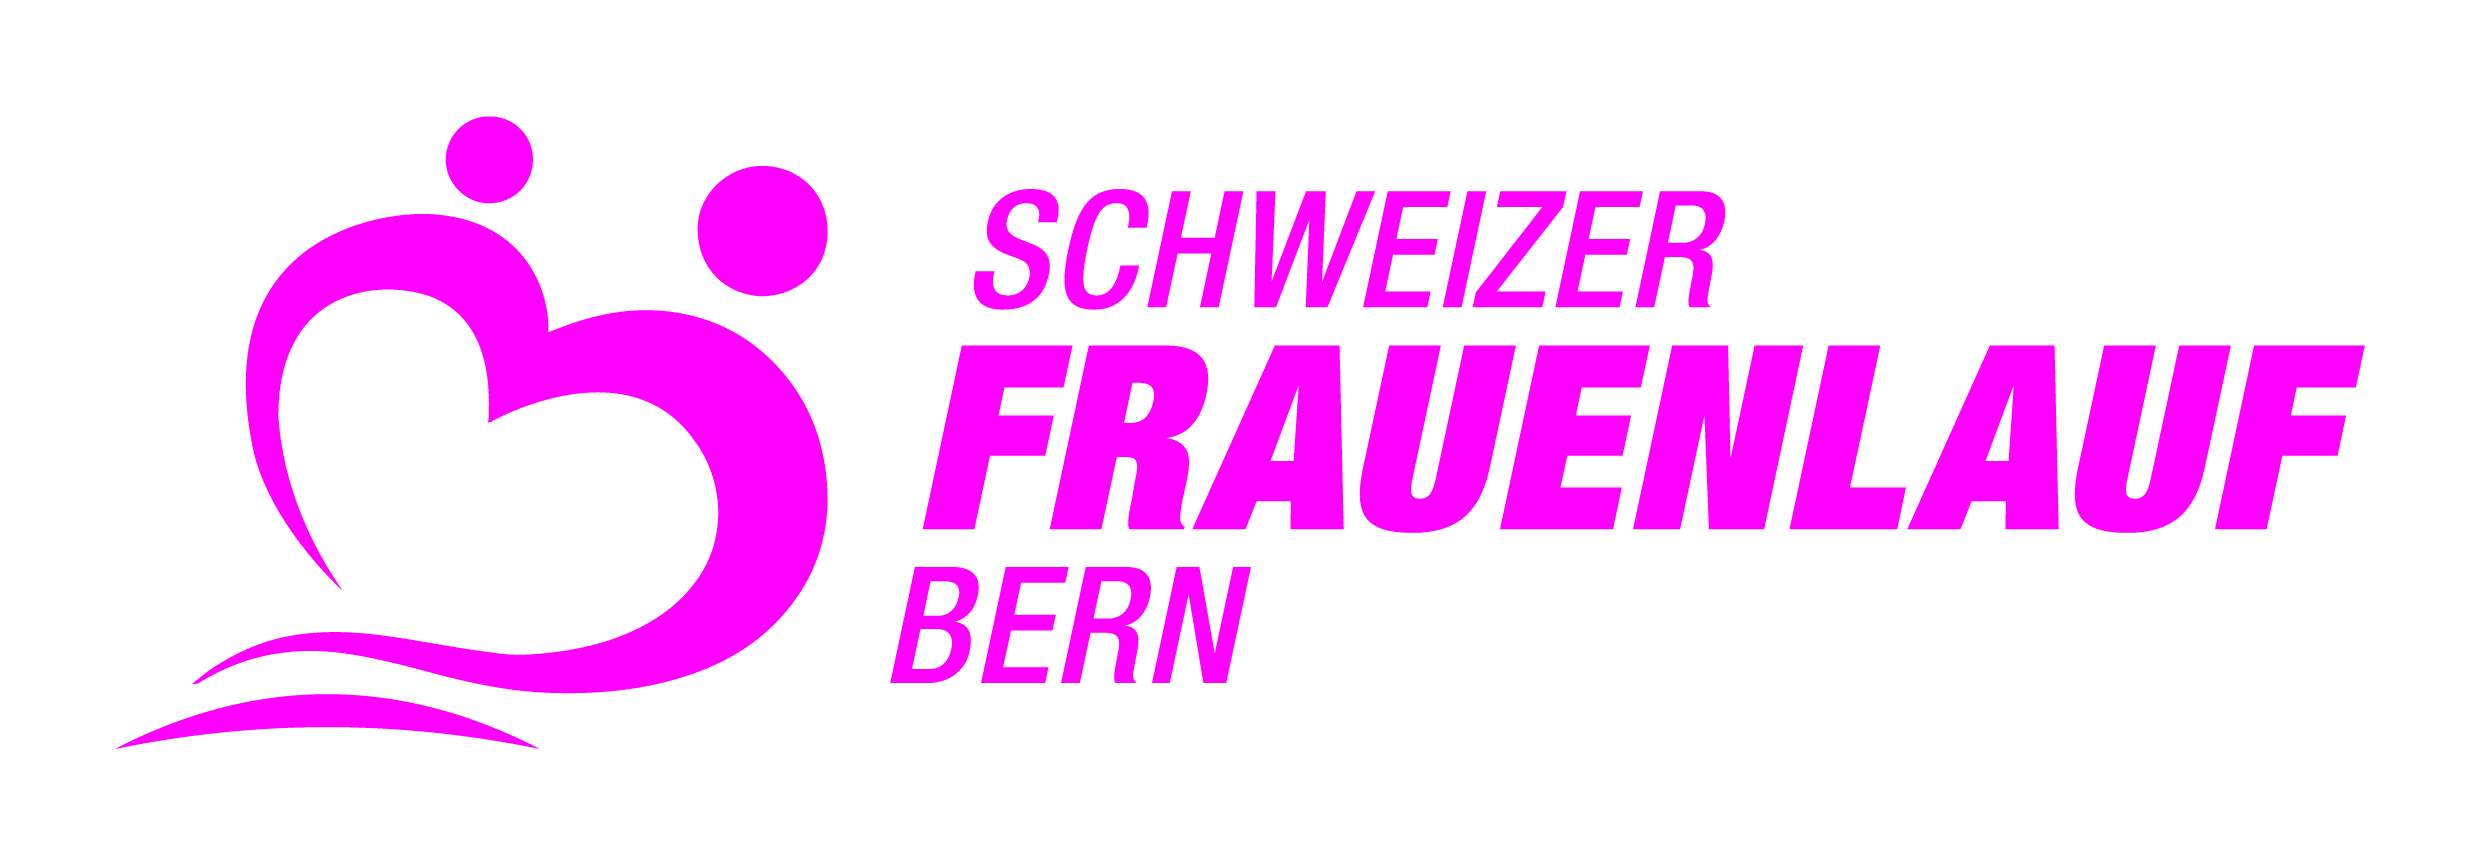 38. Schweizer Frauenlauf Bern